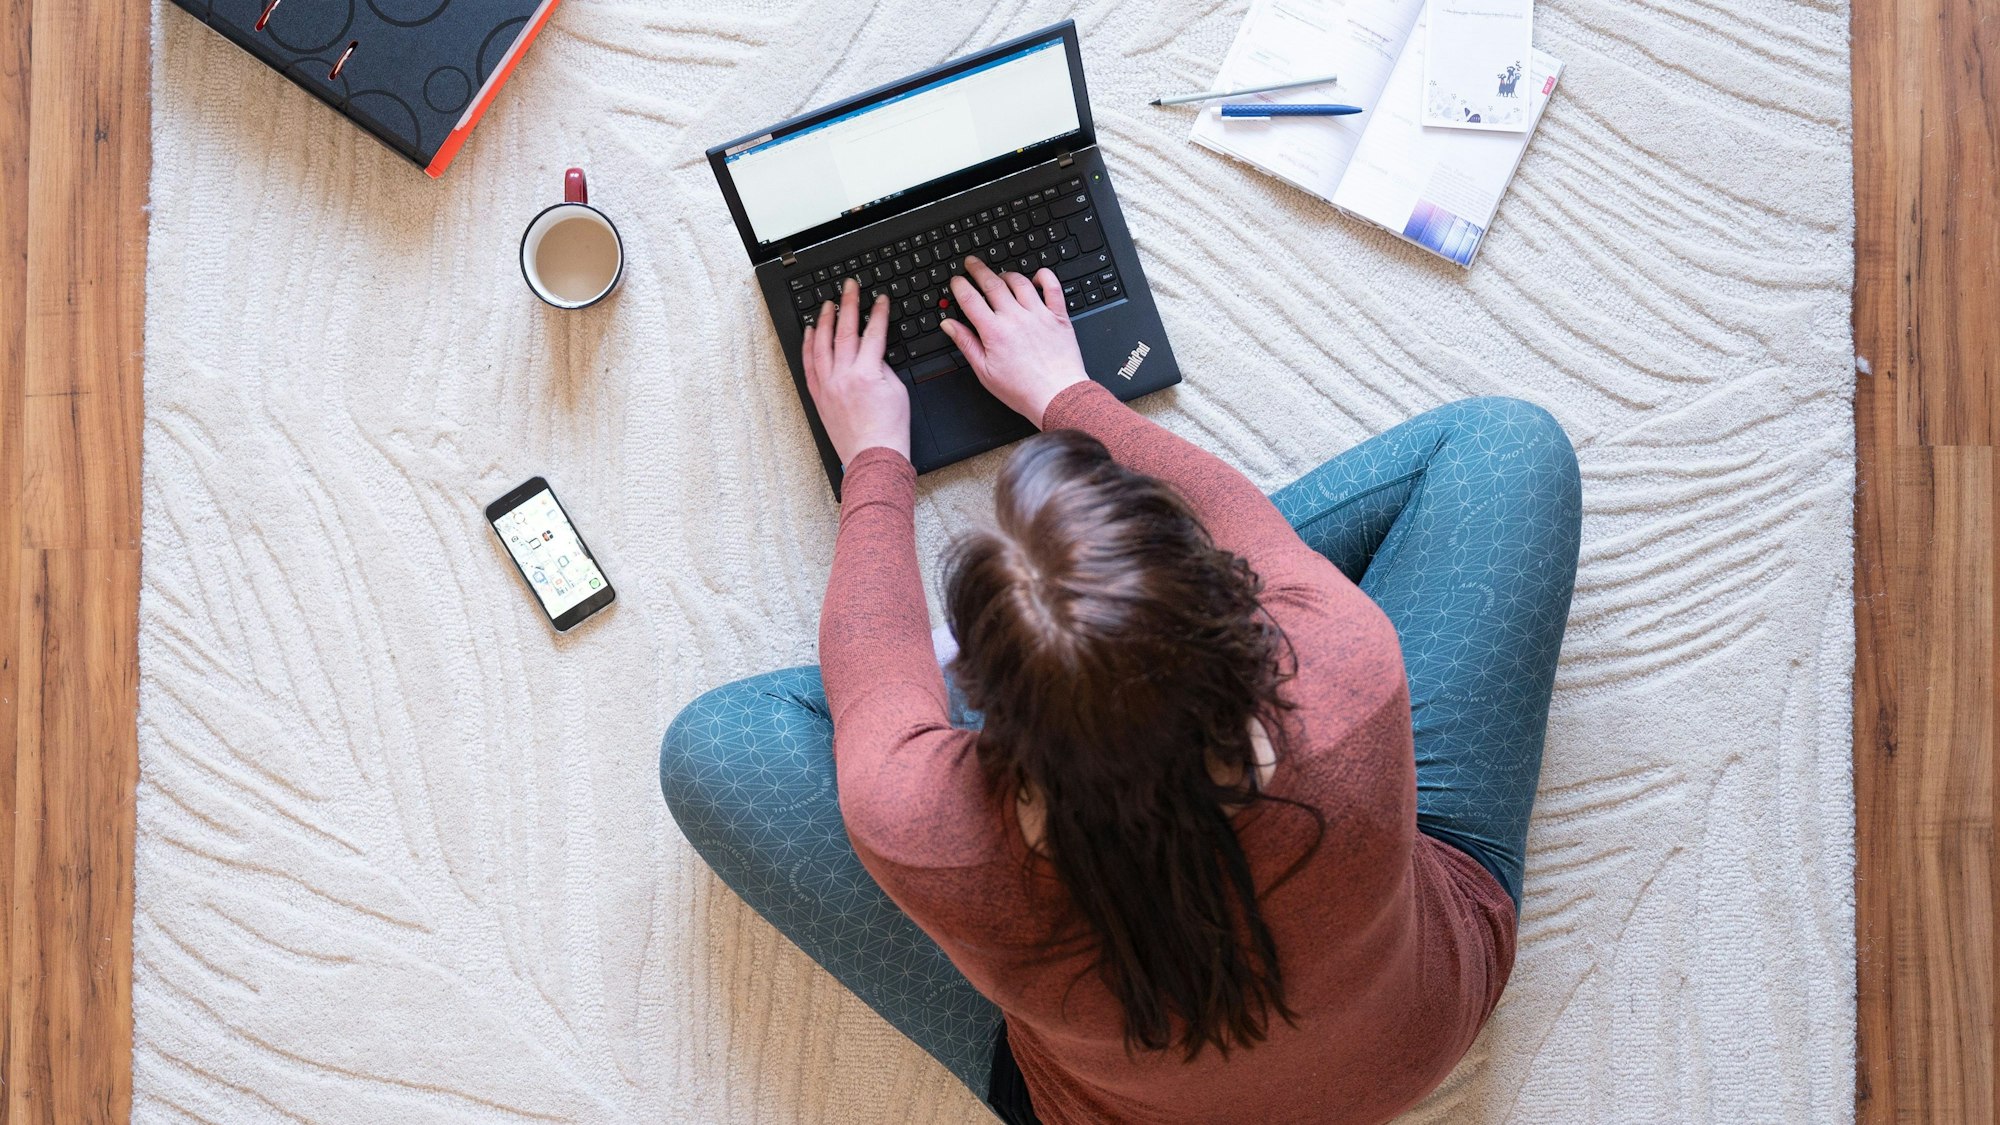 Eine Frau sitzt mit Laptop, Kaffeetasse, ihrem Handy und einem Ordner auf einem Teppich und arbeitet.